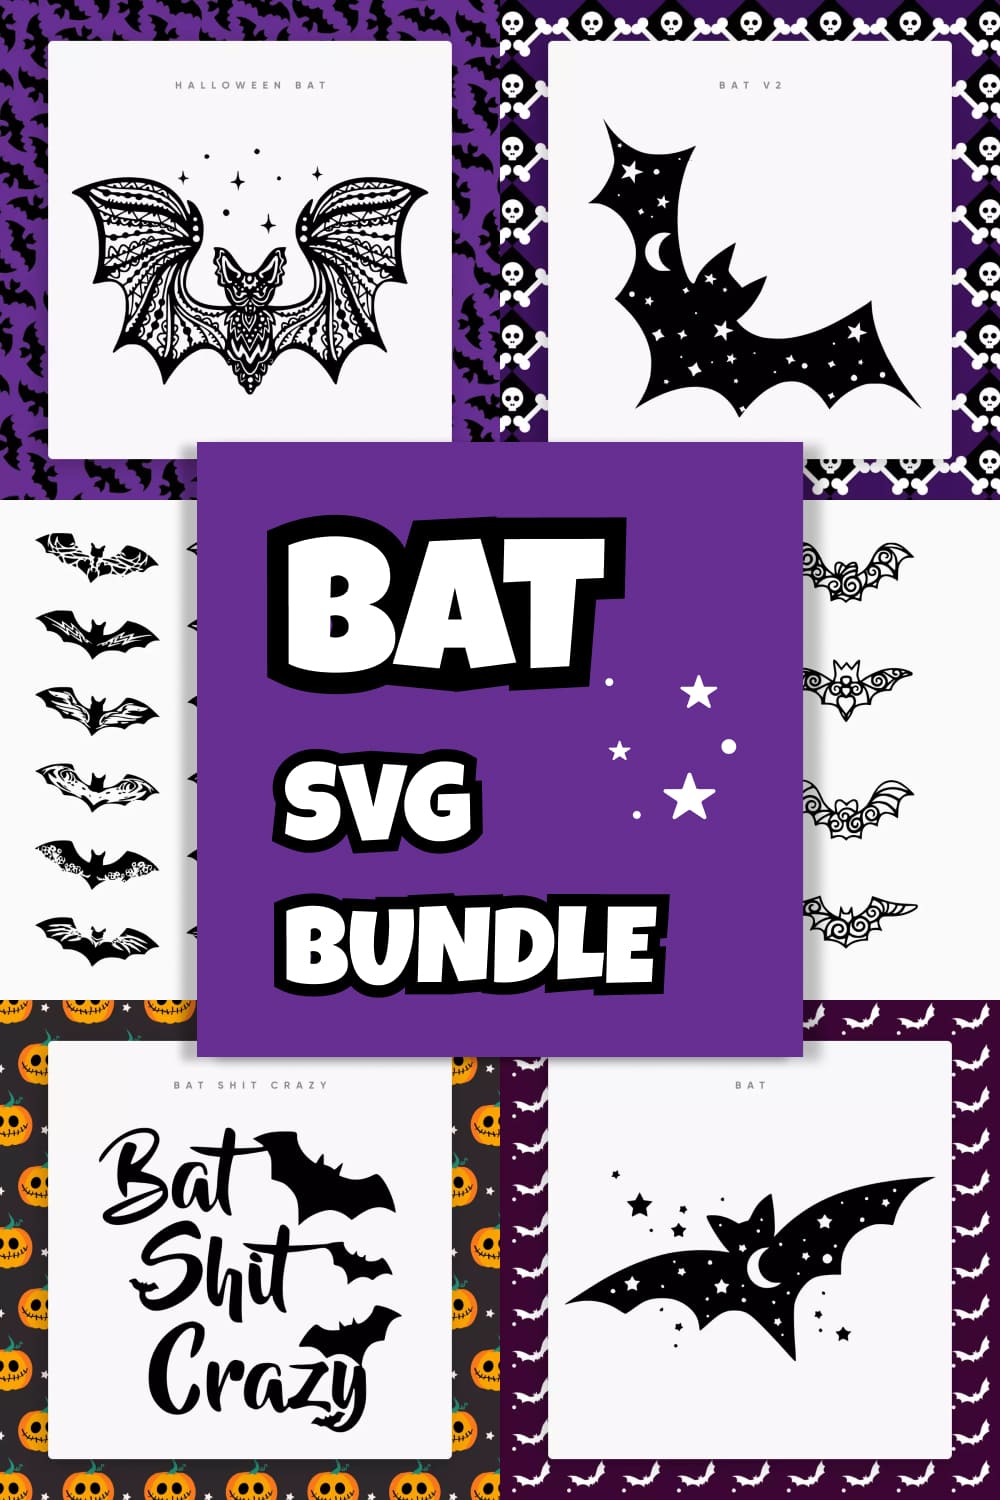 Bat SVG Bundle - pinterest image preview.